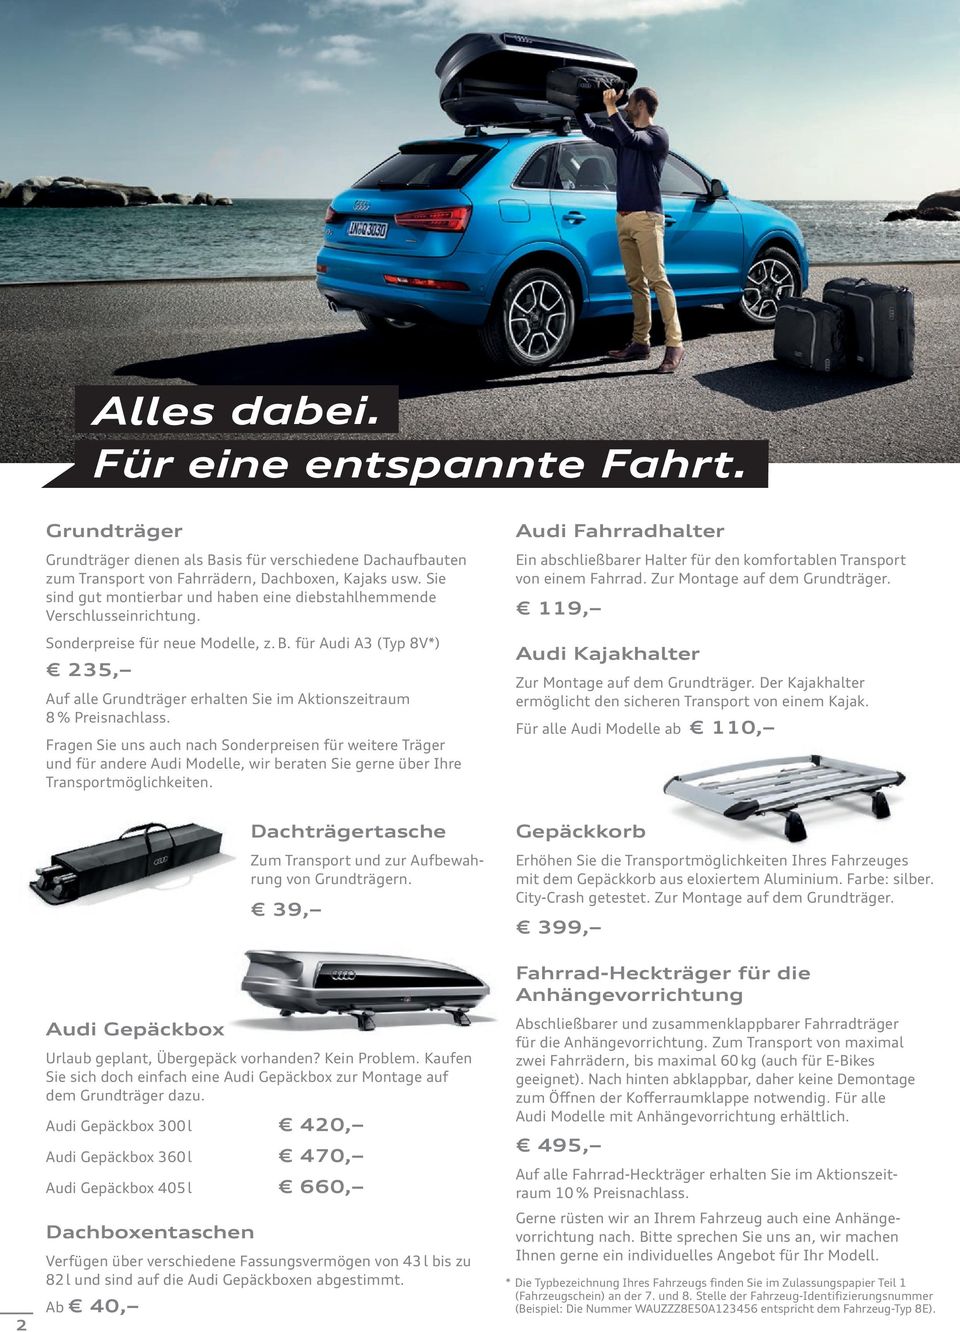 für Audi A3 (Typ 8V*) 235, Auf alle Grundträger erhalten Sie im Aktionszeitraum 8 % Preisnachlass.